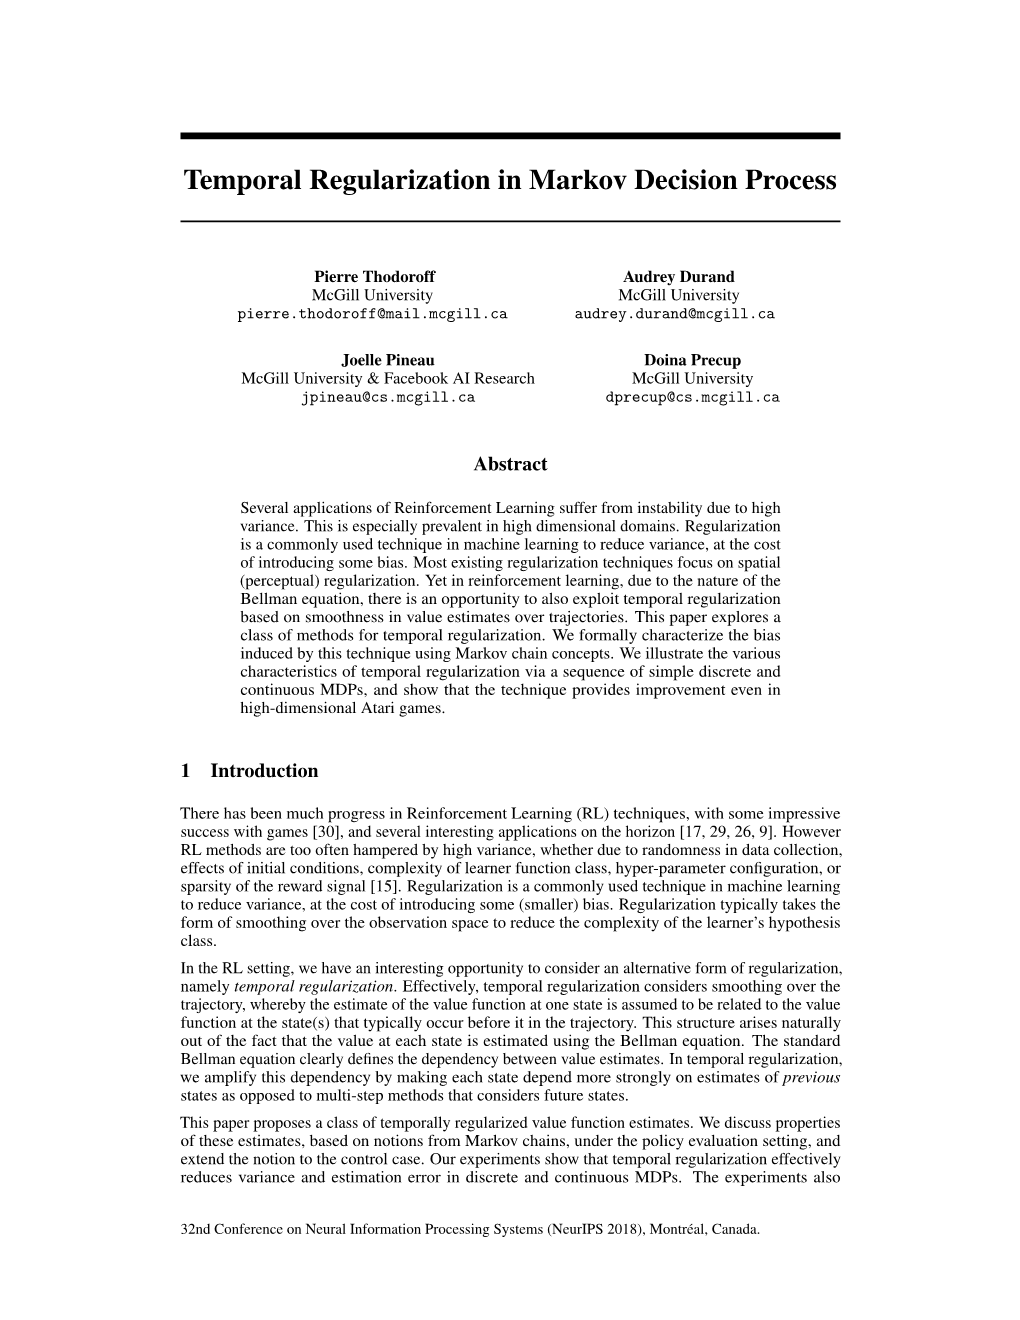 Temporal Regularization for Markov Decision Process